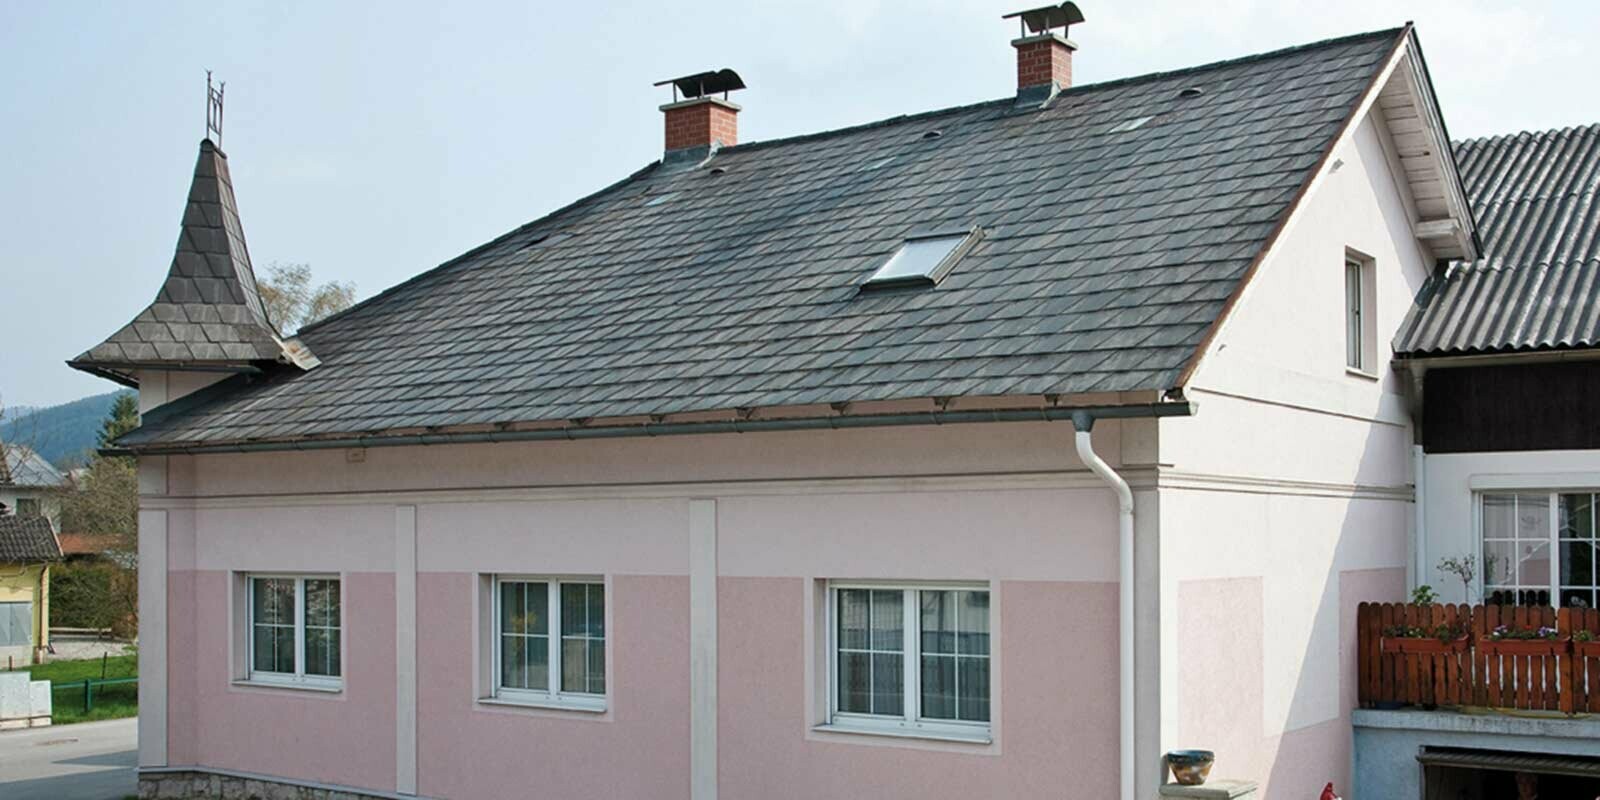 Maison avant la rénovation de toiture à l’aide de tuiles PREFA, en Autriche. Auparavant fibrociment Eternit et tourelle, façade rose